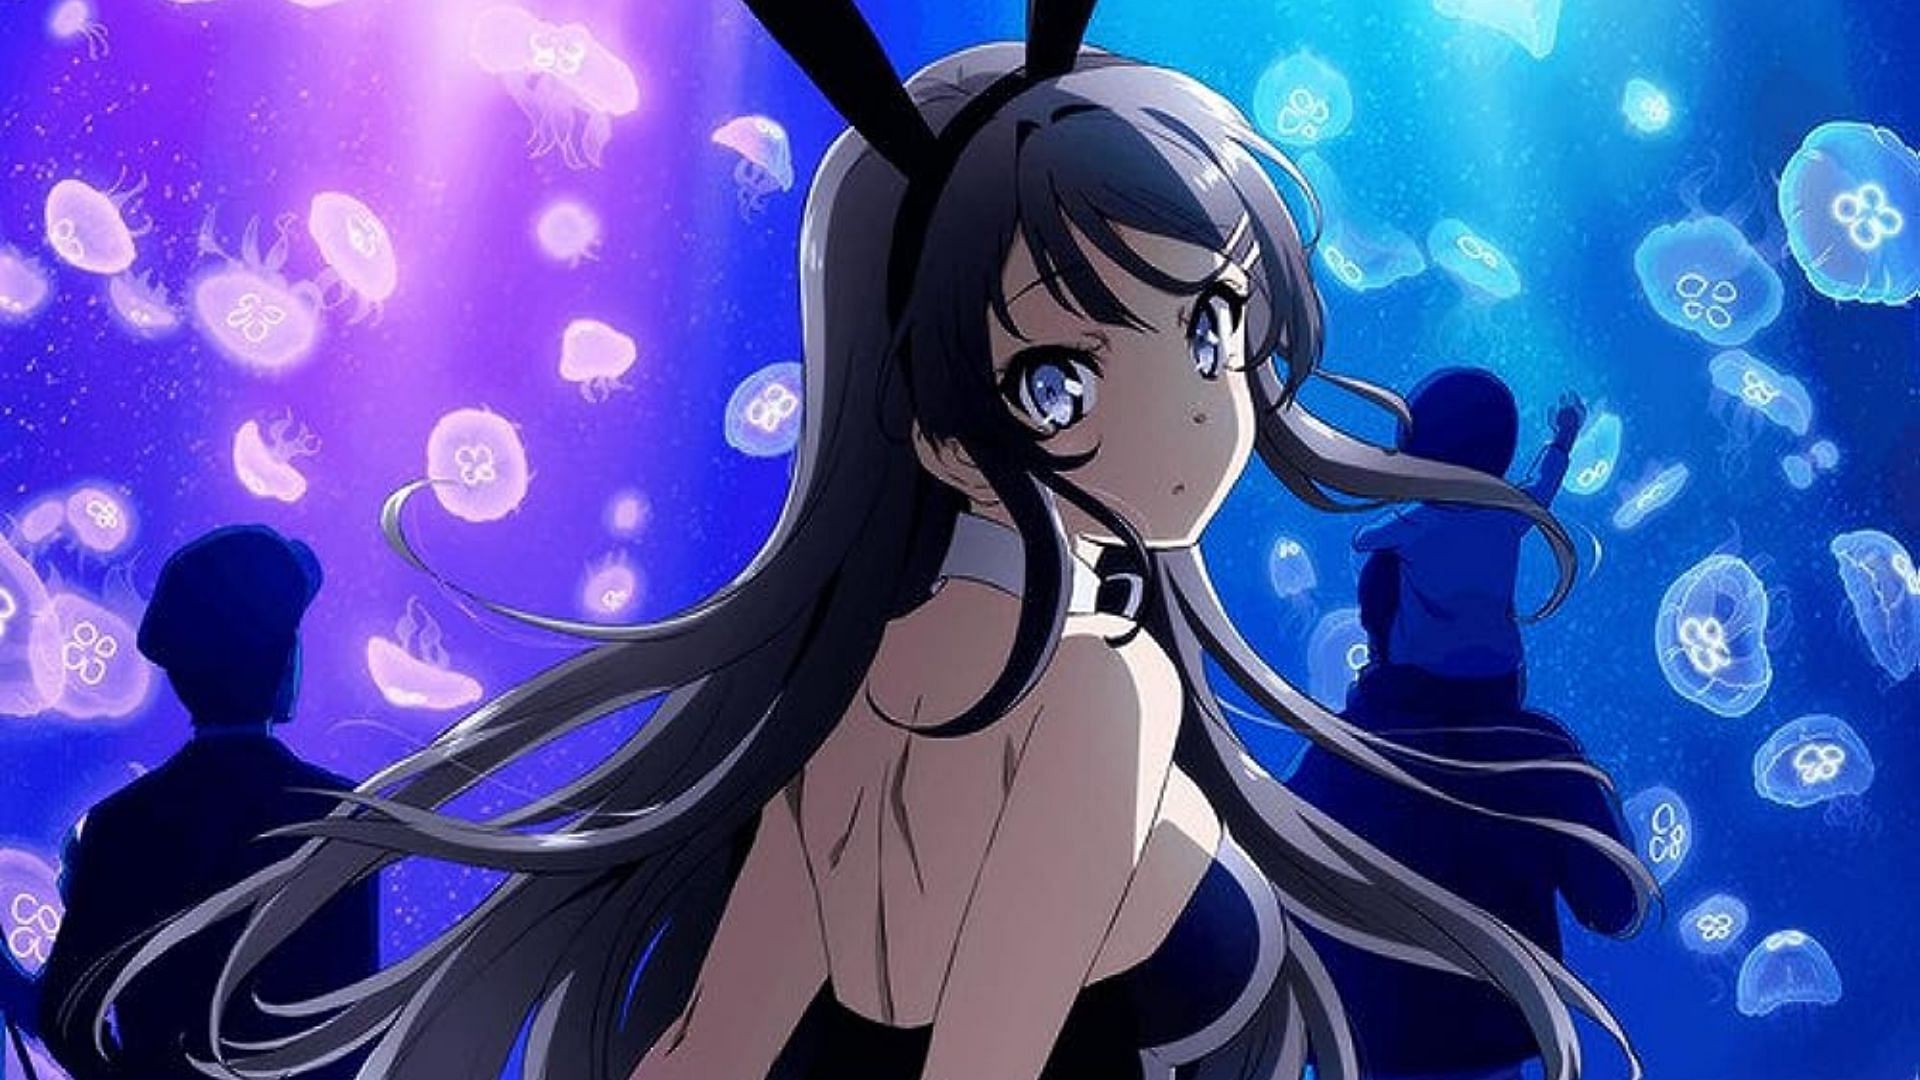 Seishun Buta Yarou Series: Daigakusei-hen (Anime) –